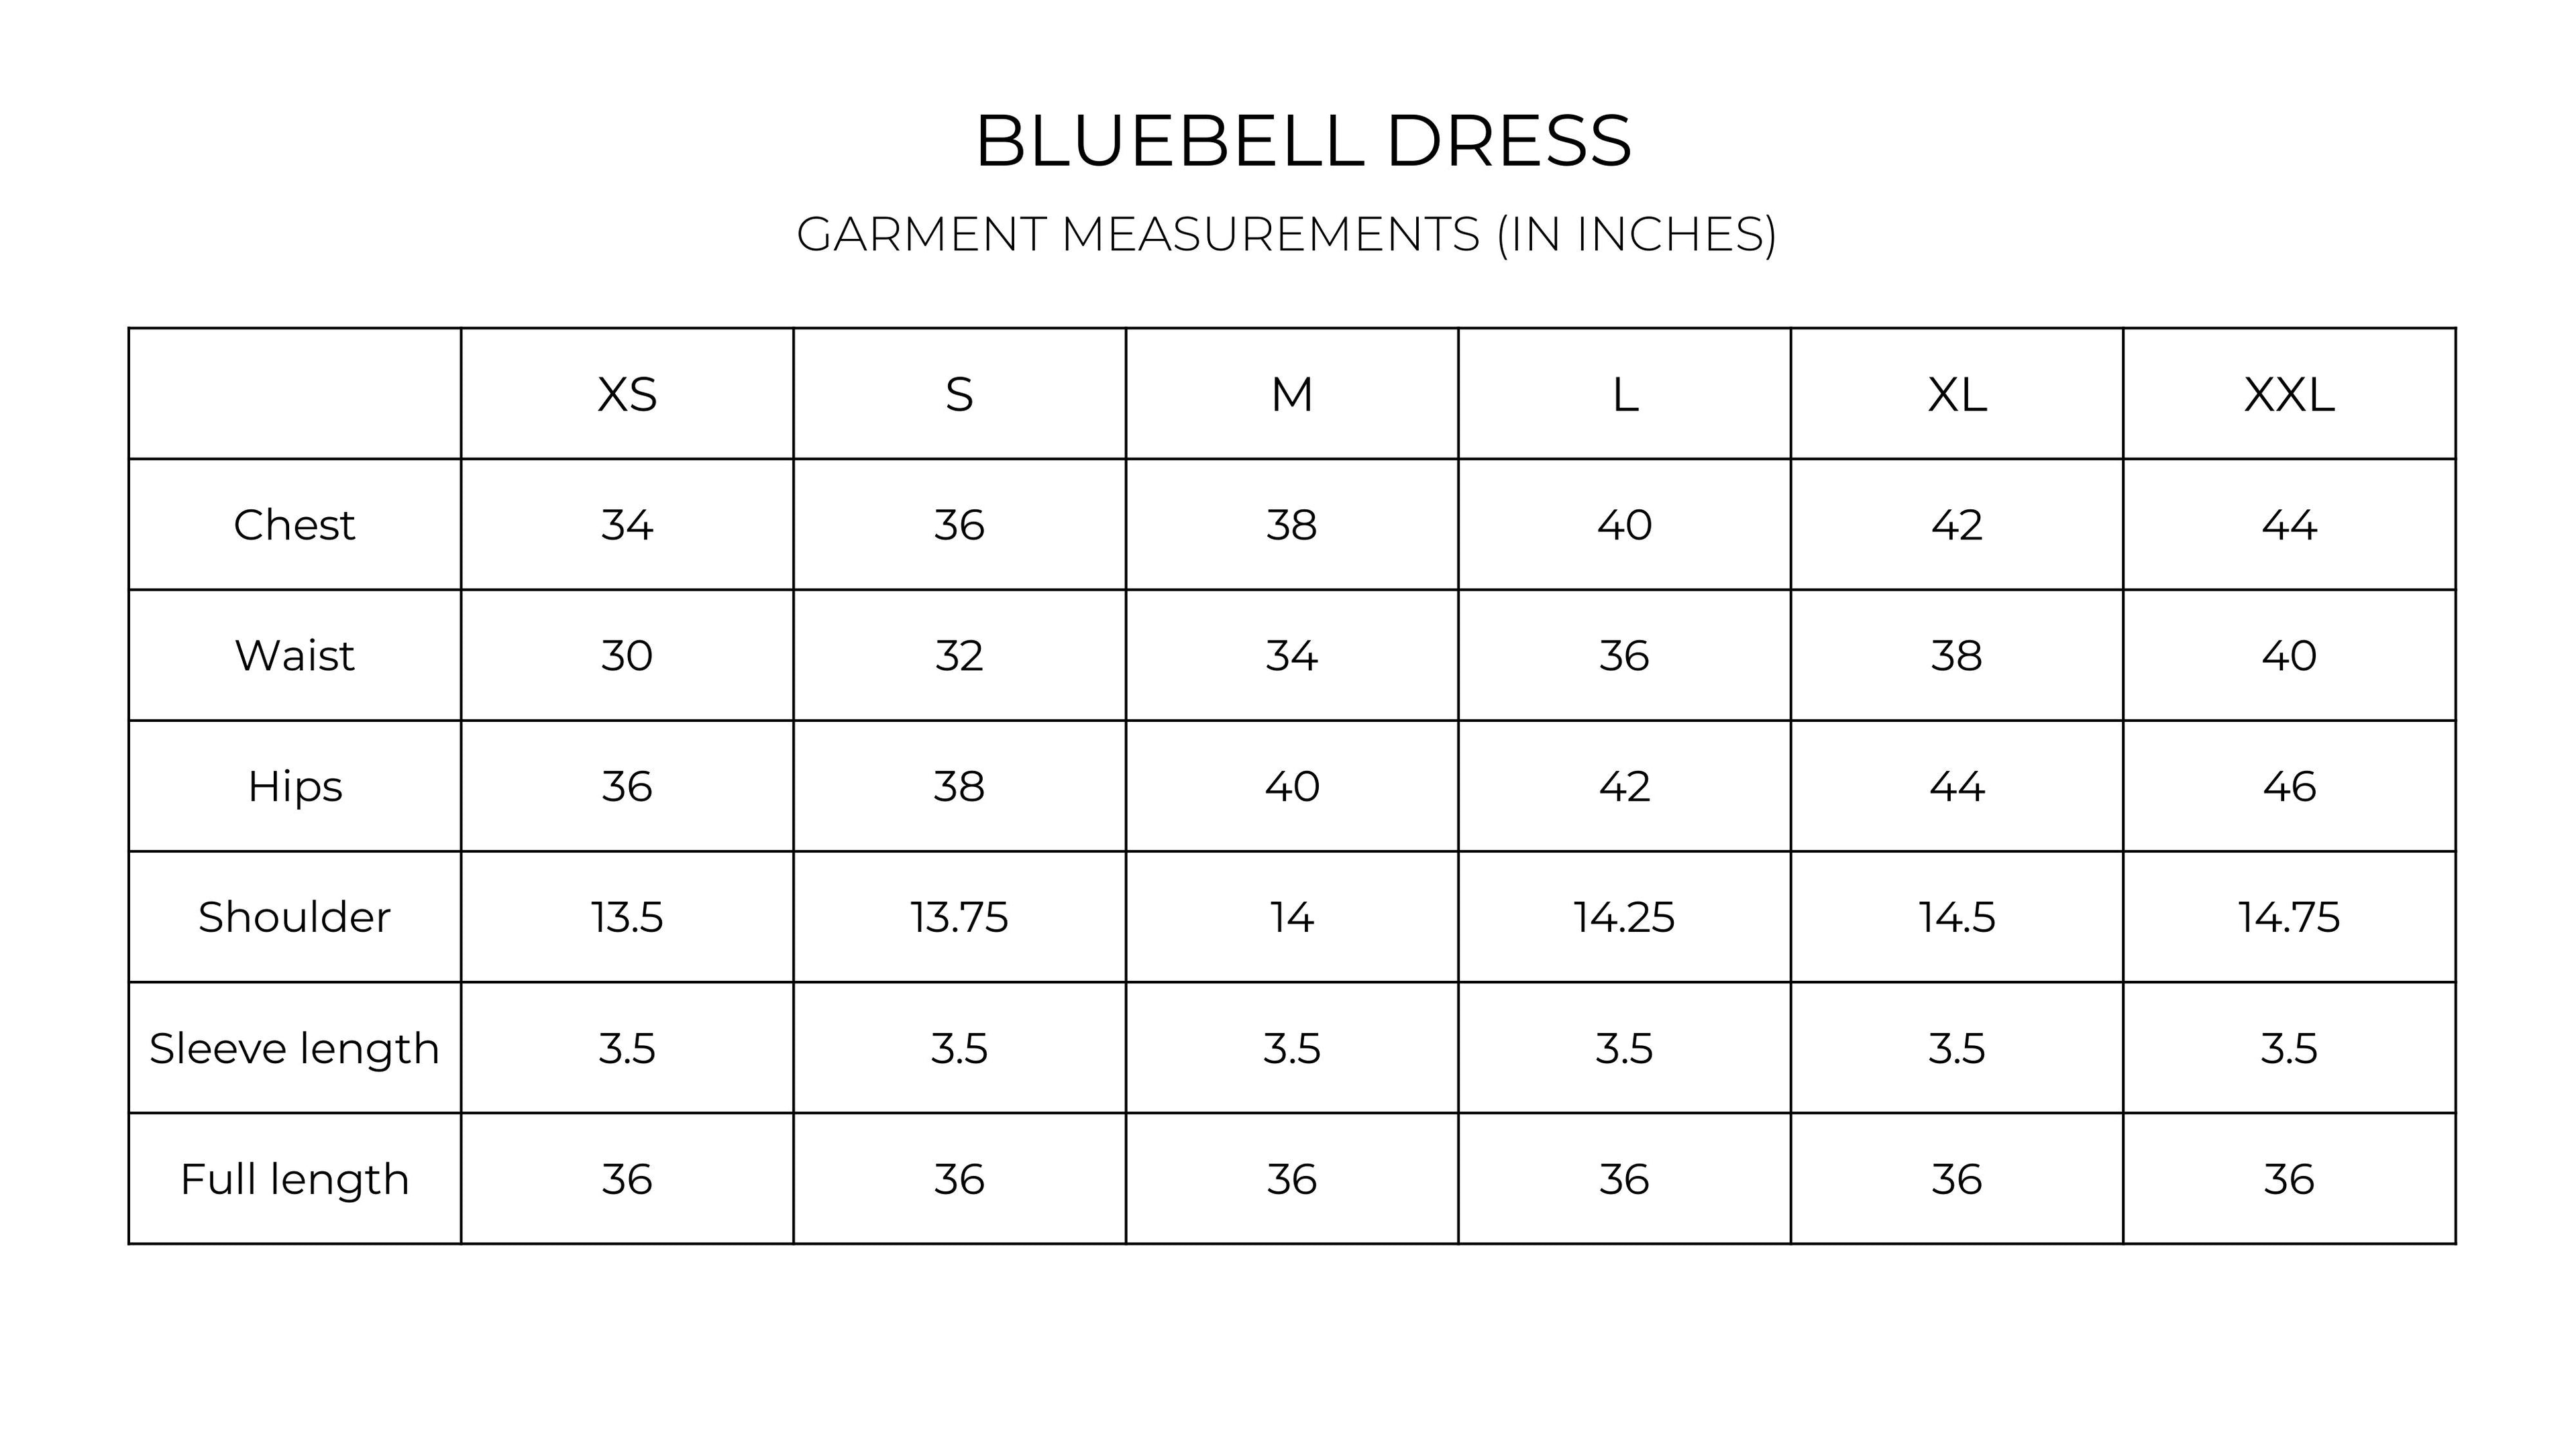 Bluebell dress